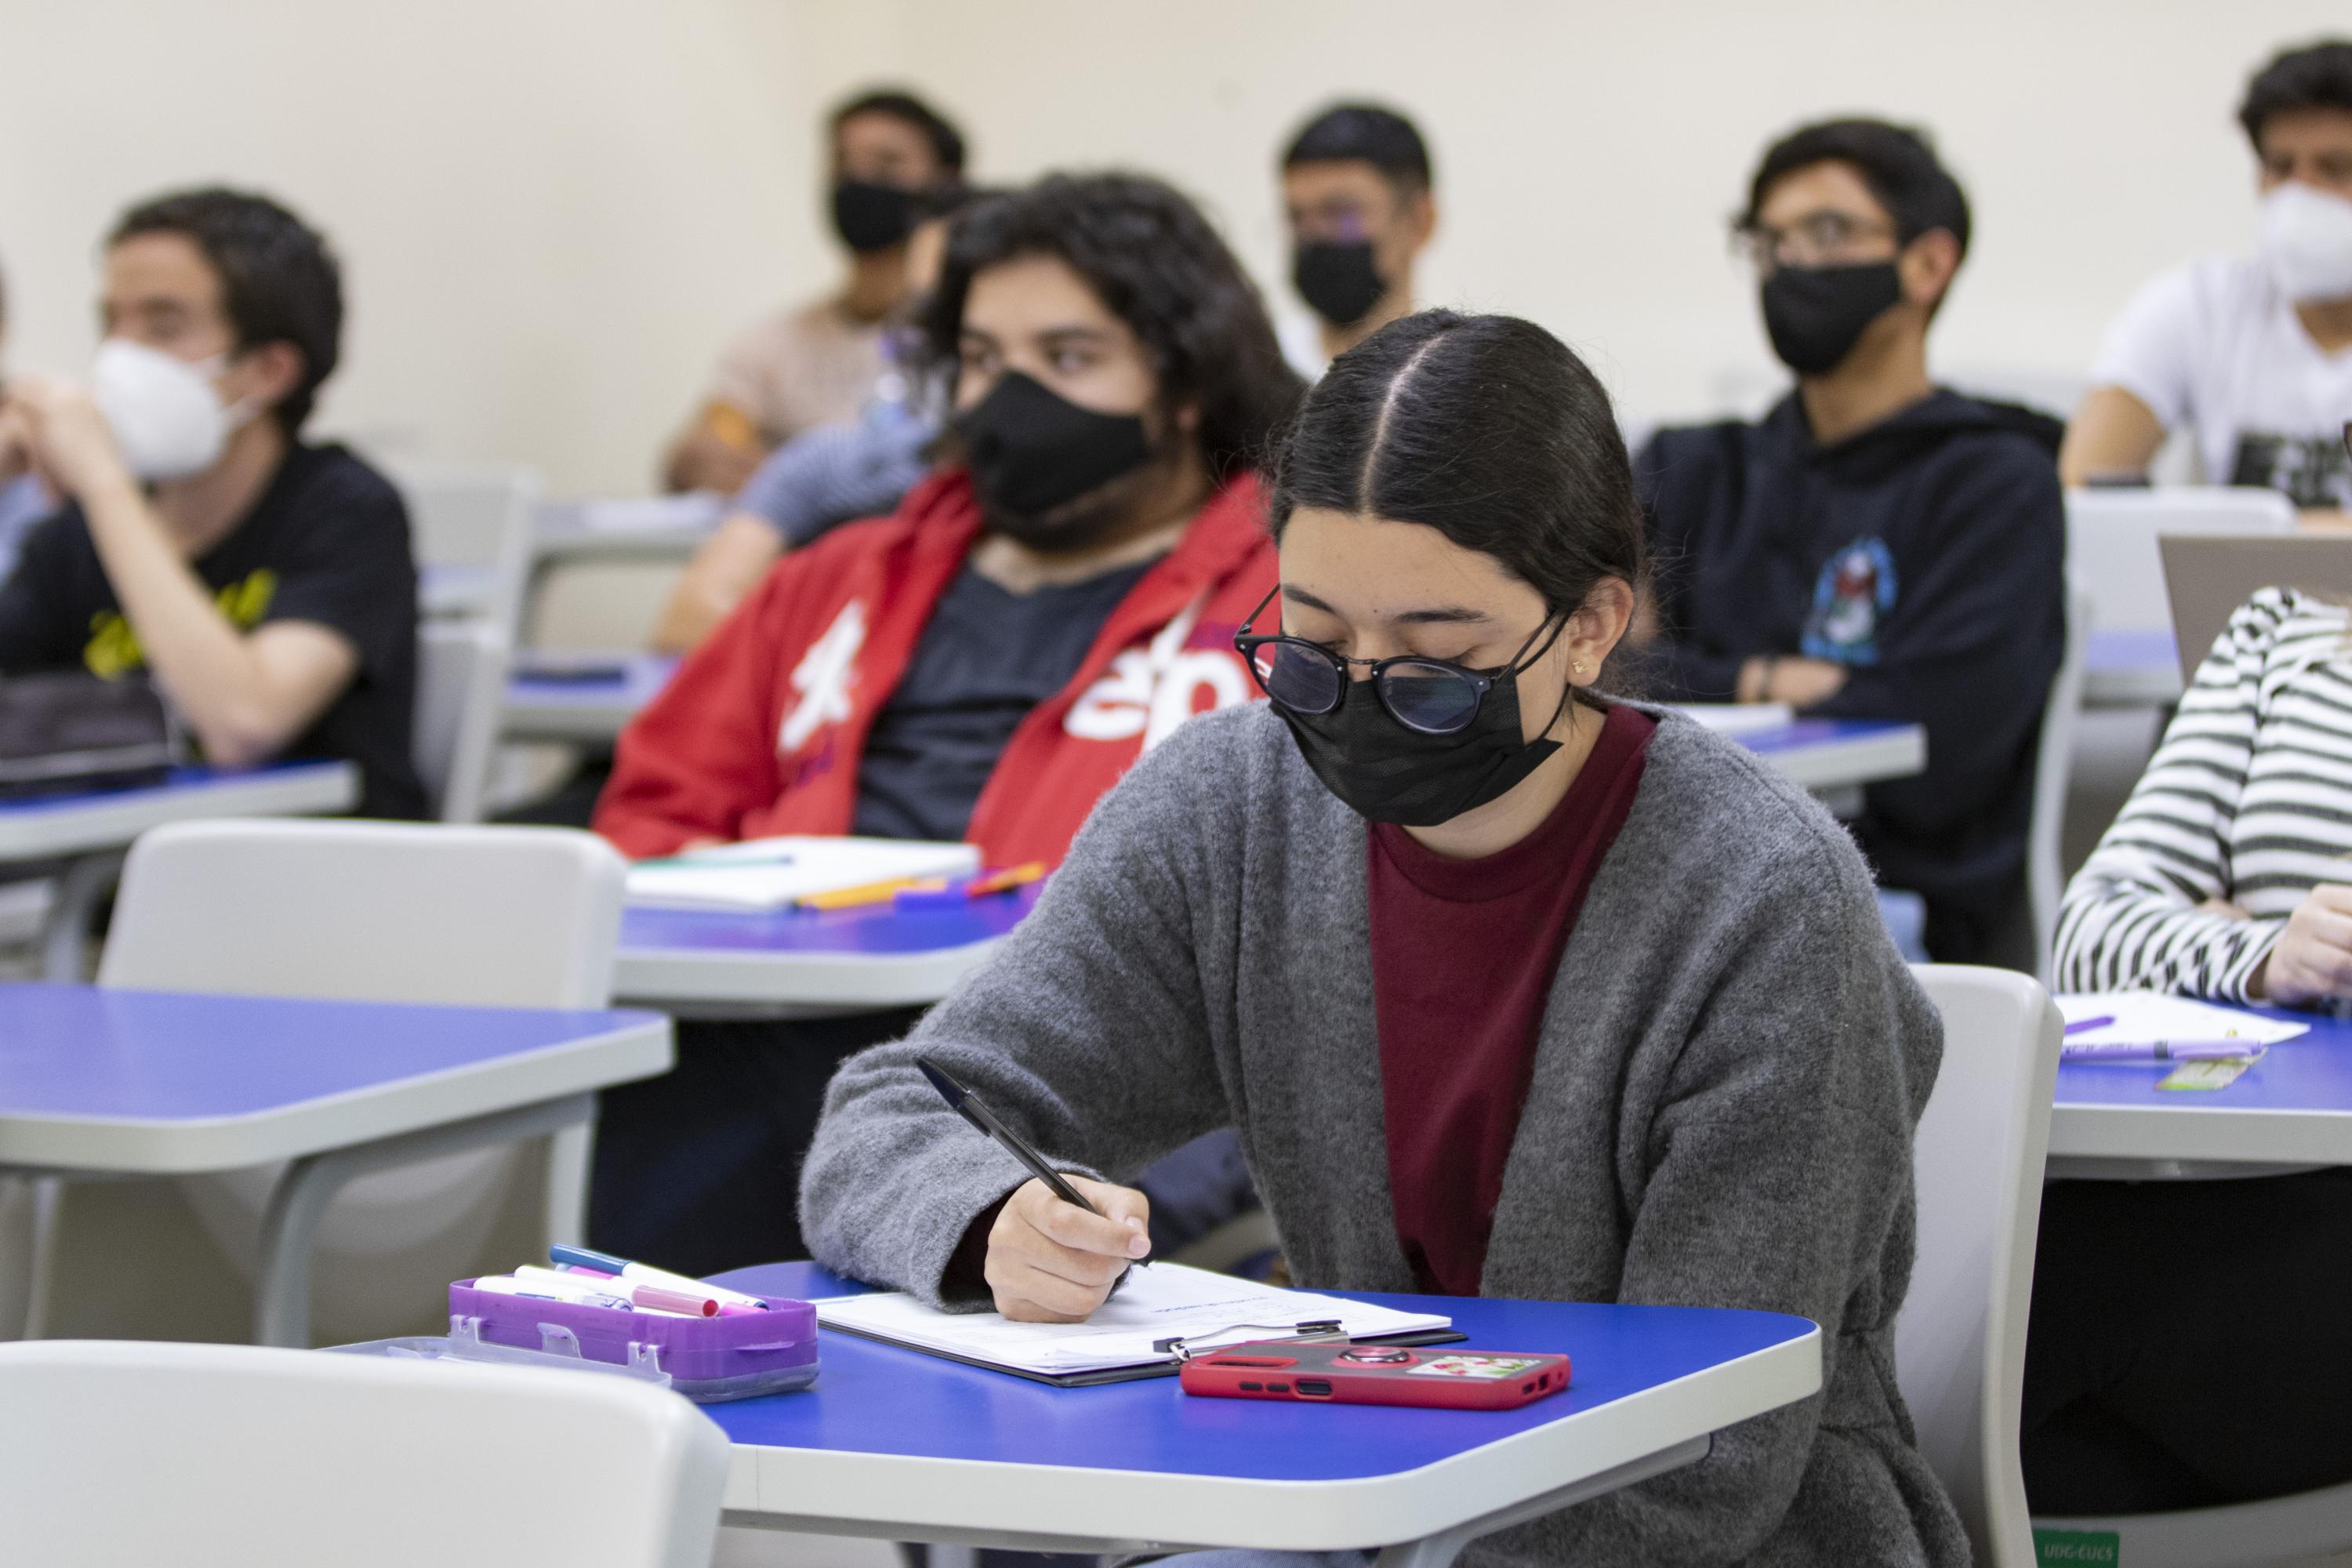 Regresan a clases presenciales en la UdeG | Universidad de Guadalajara